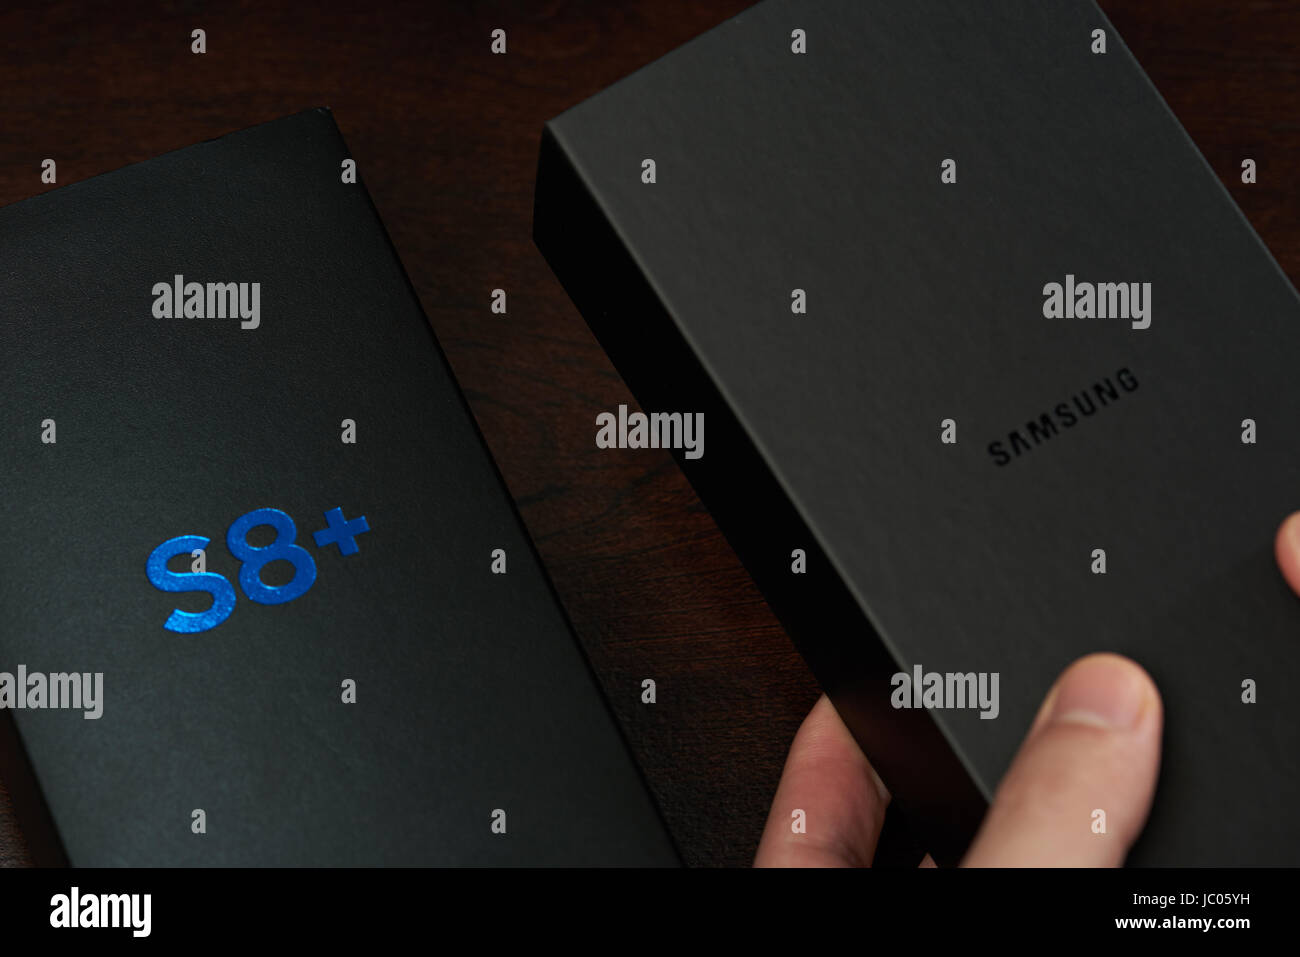 Samsung galaxy s8 plus immagini e fotografie stock ad alta risoluzione -  Alamy